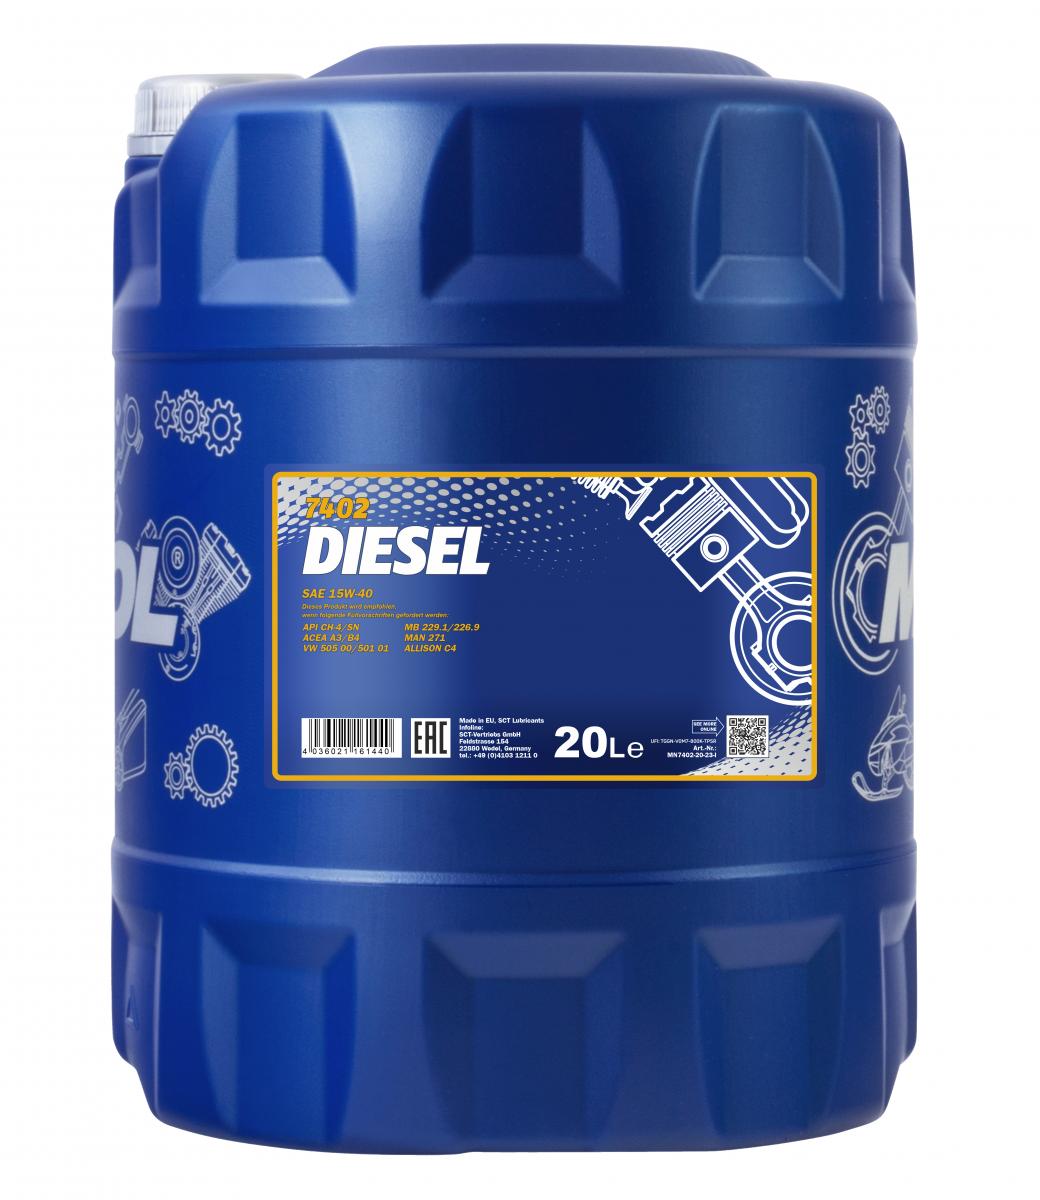 40 Liter (2x20) MANNOL Diesel 15W-40 CH-4 SL 15W40 Motoröl ÖL 4036021161440